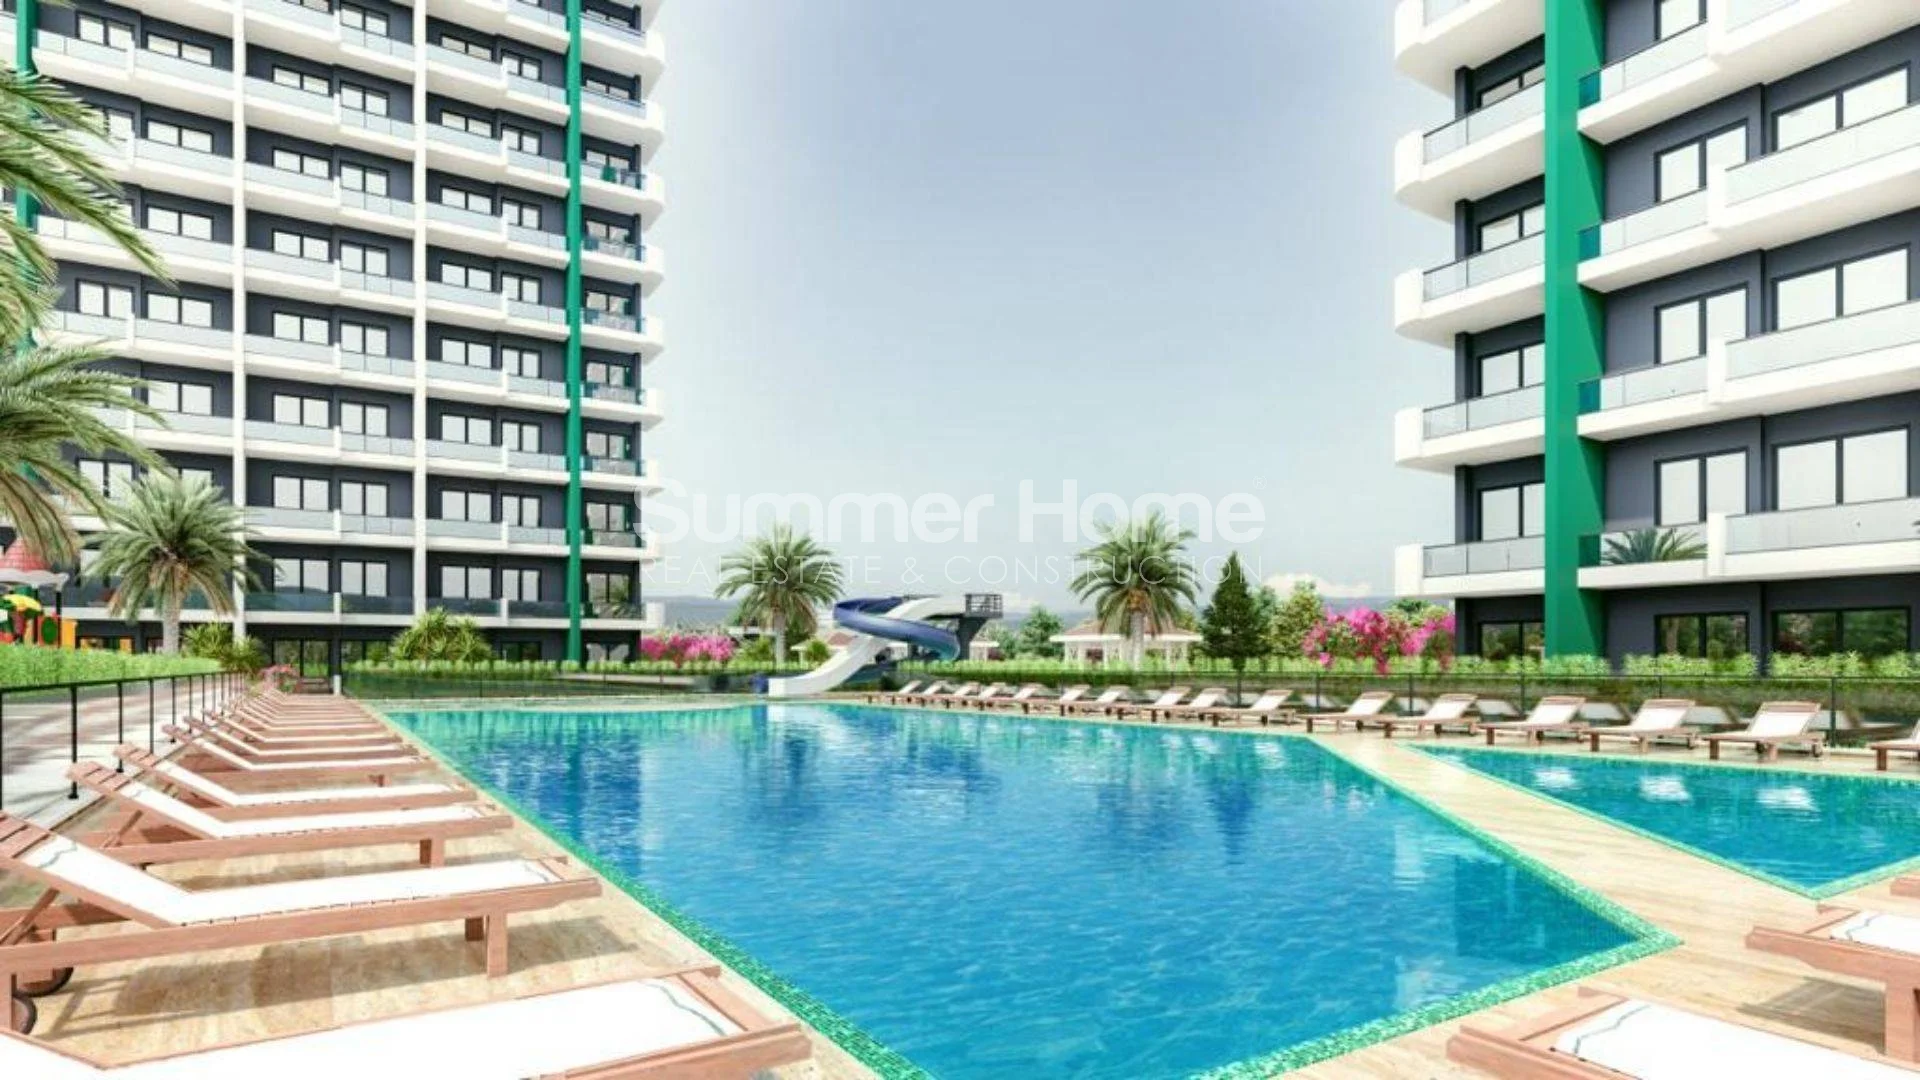 Neue wunderschöne moderne Apartments in Mezitli, Mersin Einrichtungen - 18